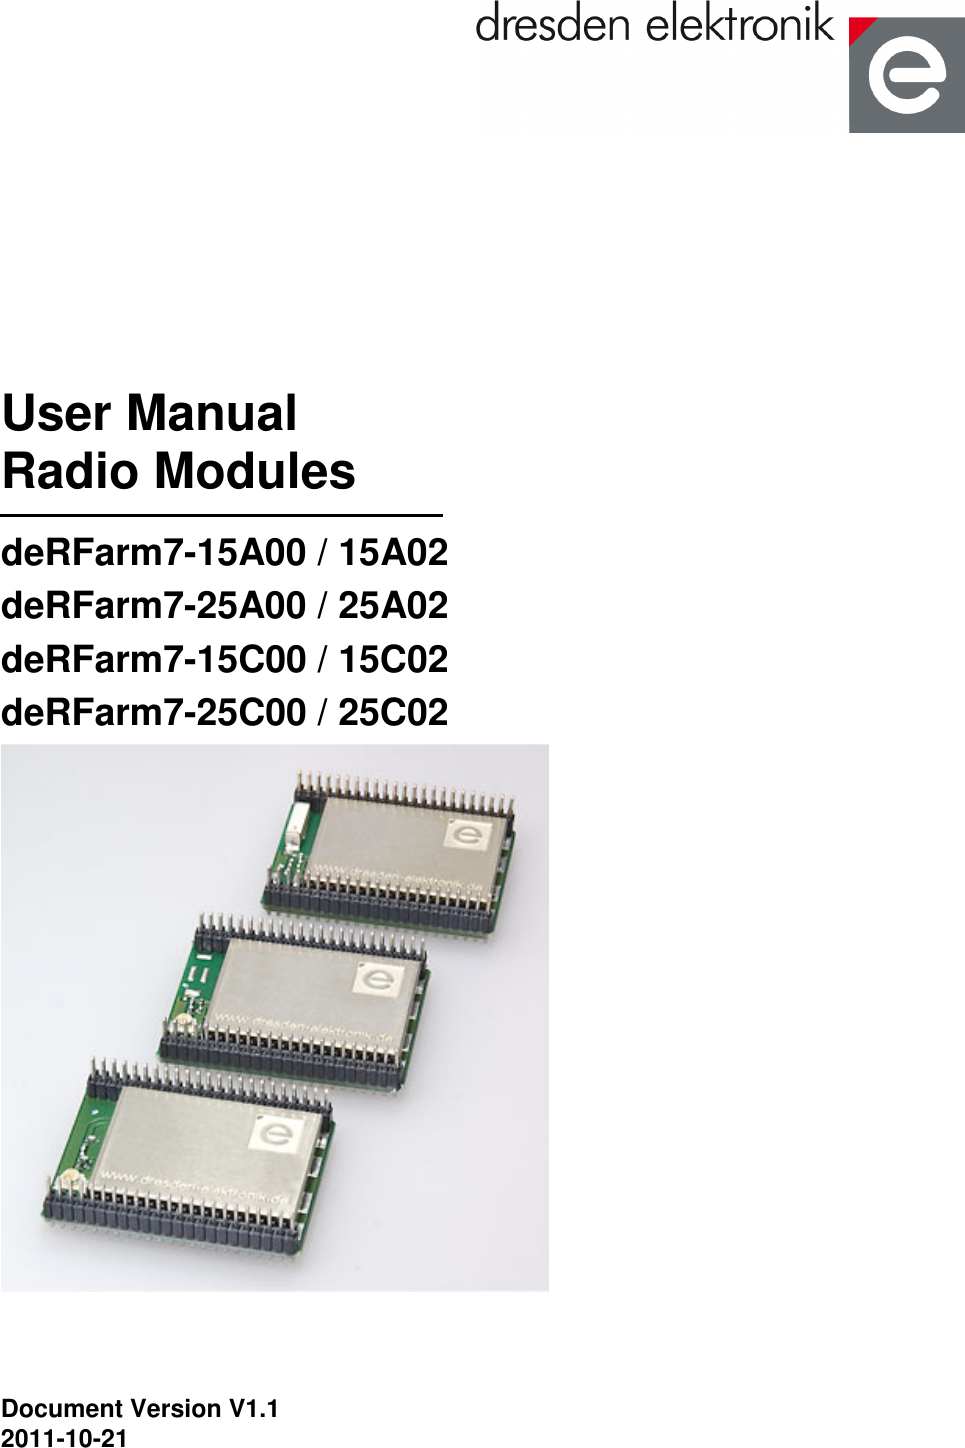  User Manual Radio Modules deRFarm7-15A00 / 15A02 deRFarm7-25A00 / 25A02 deRFarm7-15C00 / 15C02 deRFarm7-25C00 / 25C02    Document Version V1.1 2011-10-21 